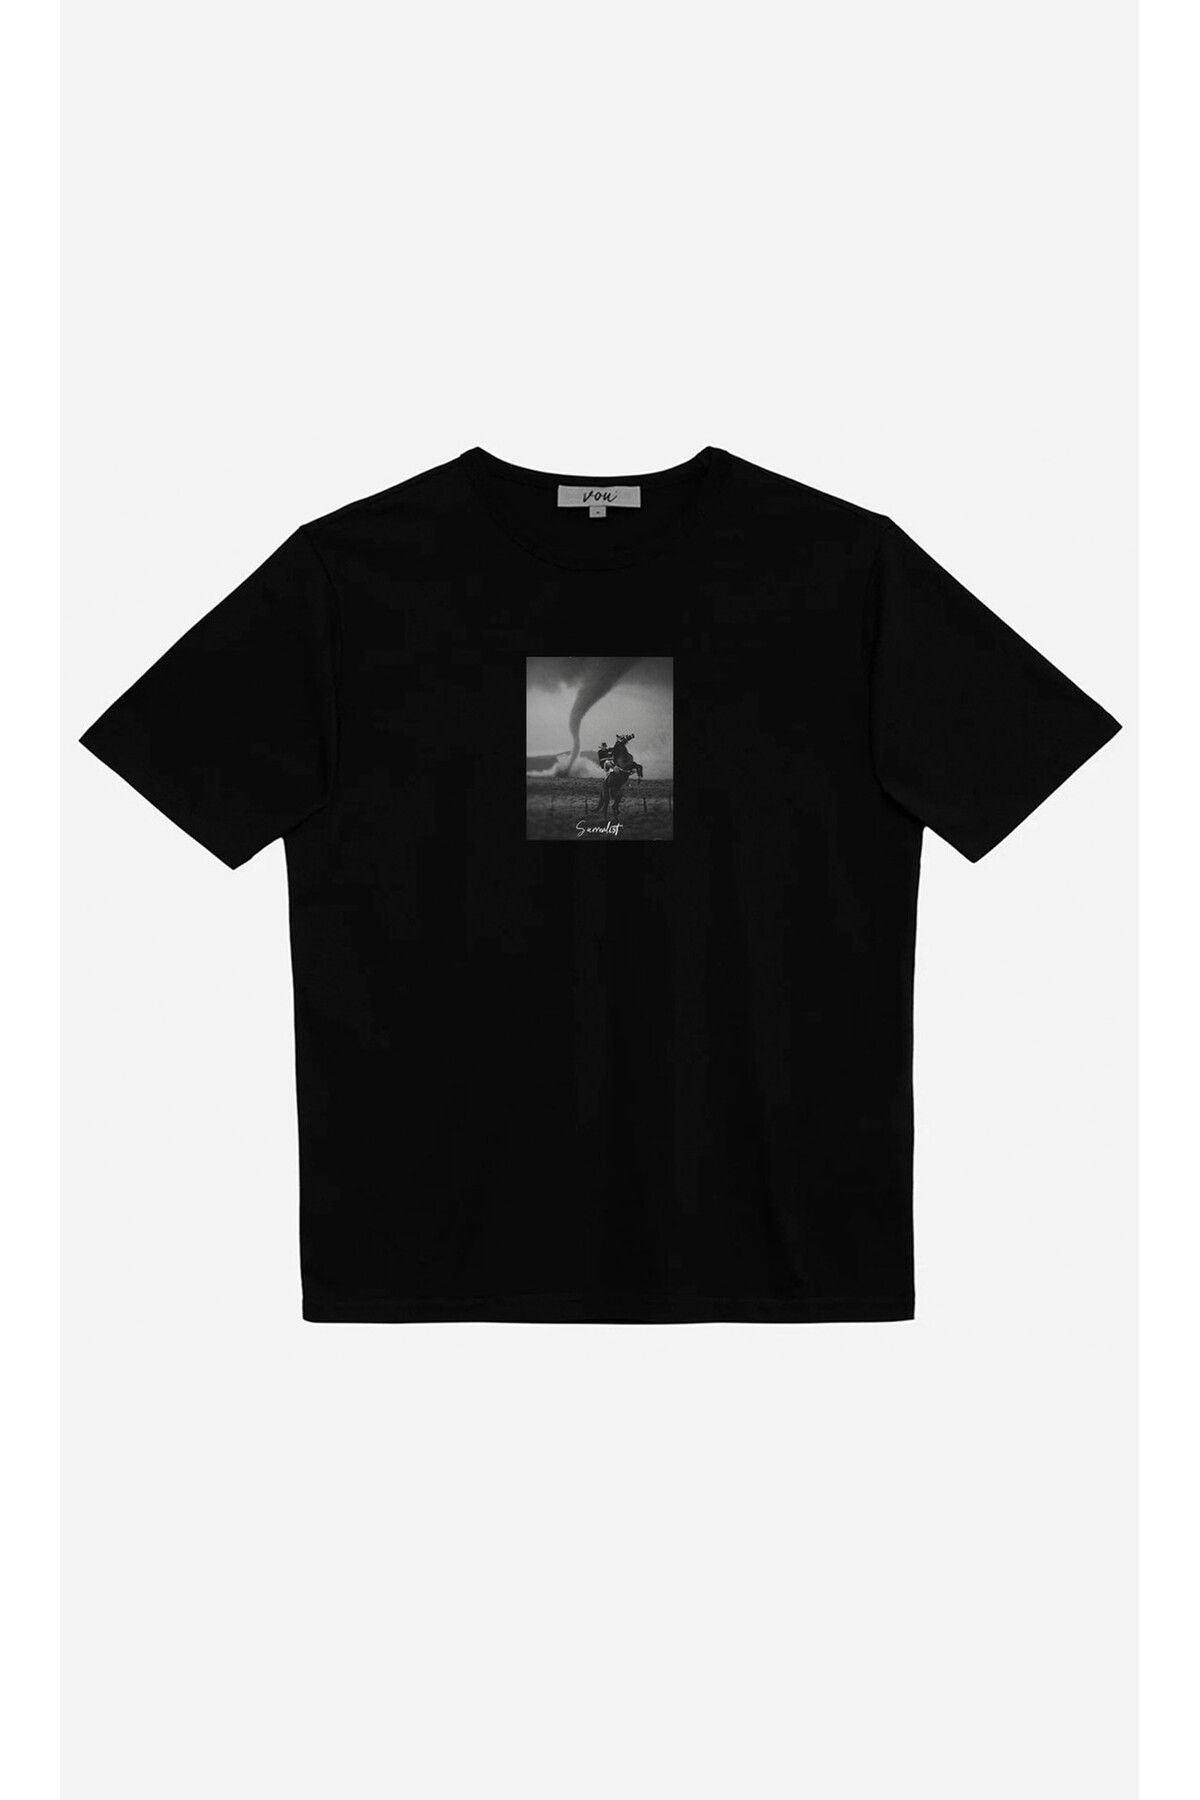 VOU 1070- Surrealist Oversize Unisex T-Shirt